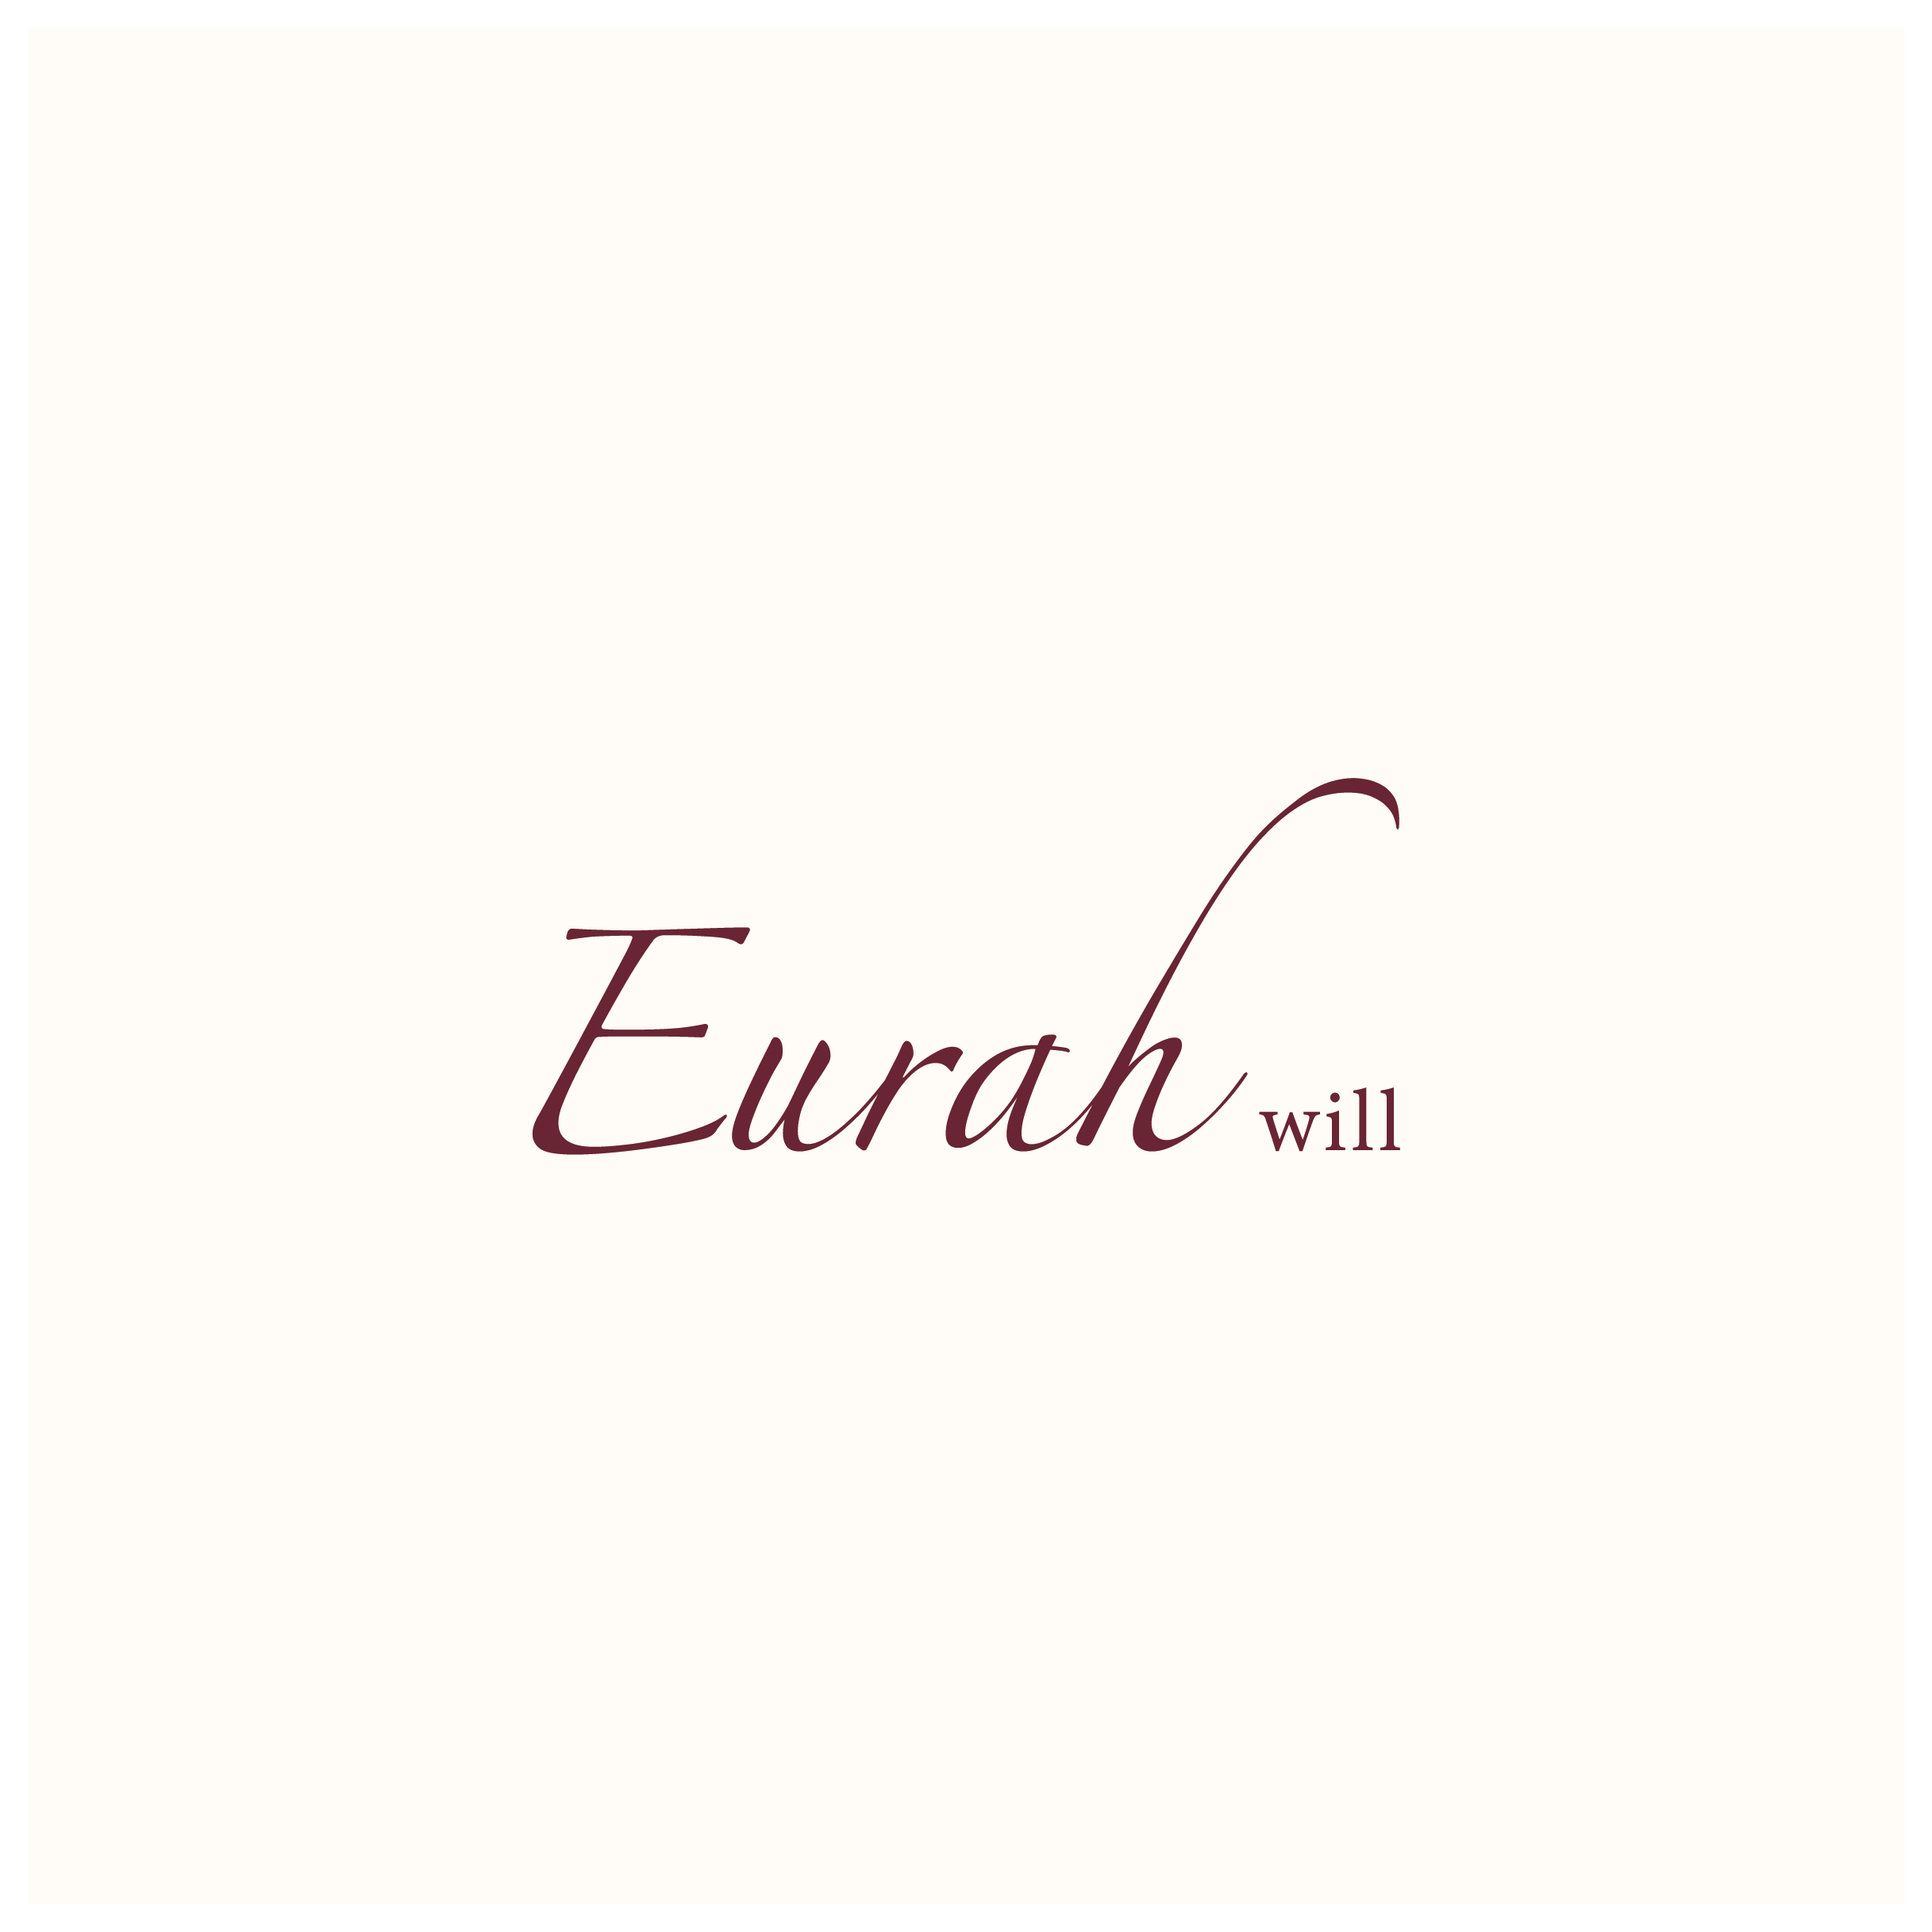 Eurah will